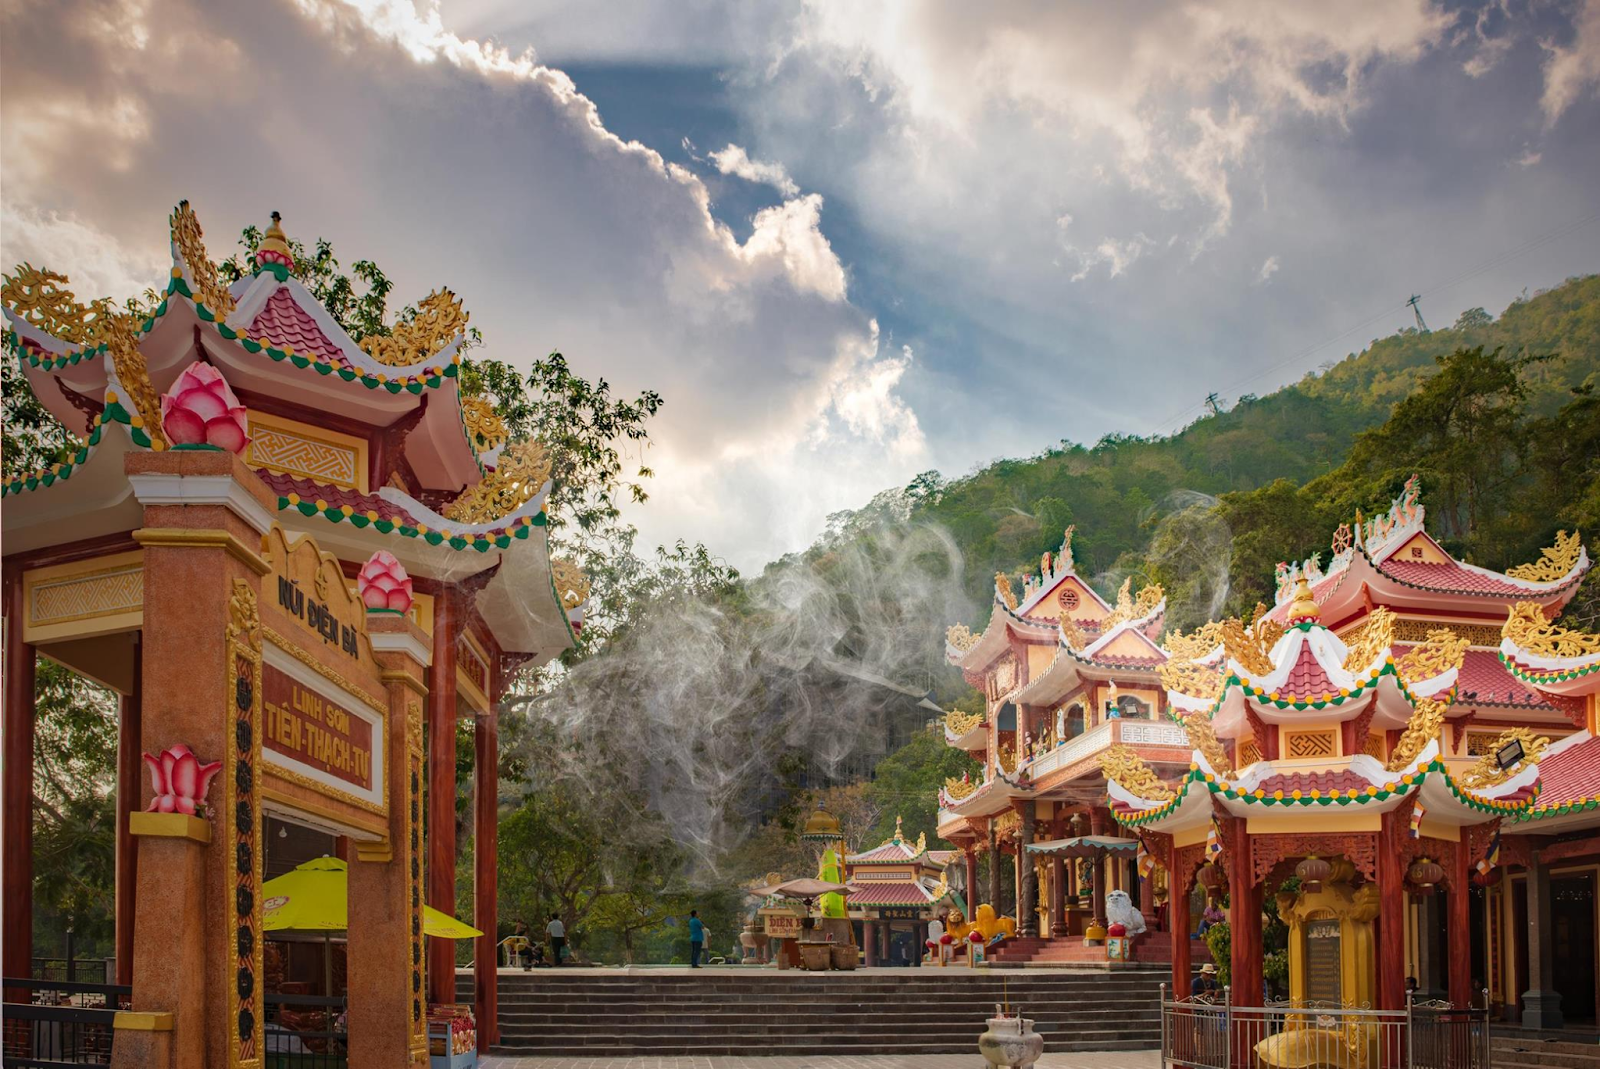 Ngôi chùa tâm linh hơn 300 năm tuổi nổi tiếng nhất tại Tây Ninh